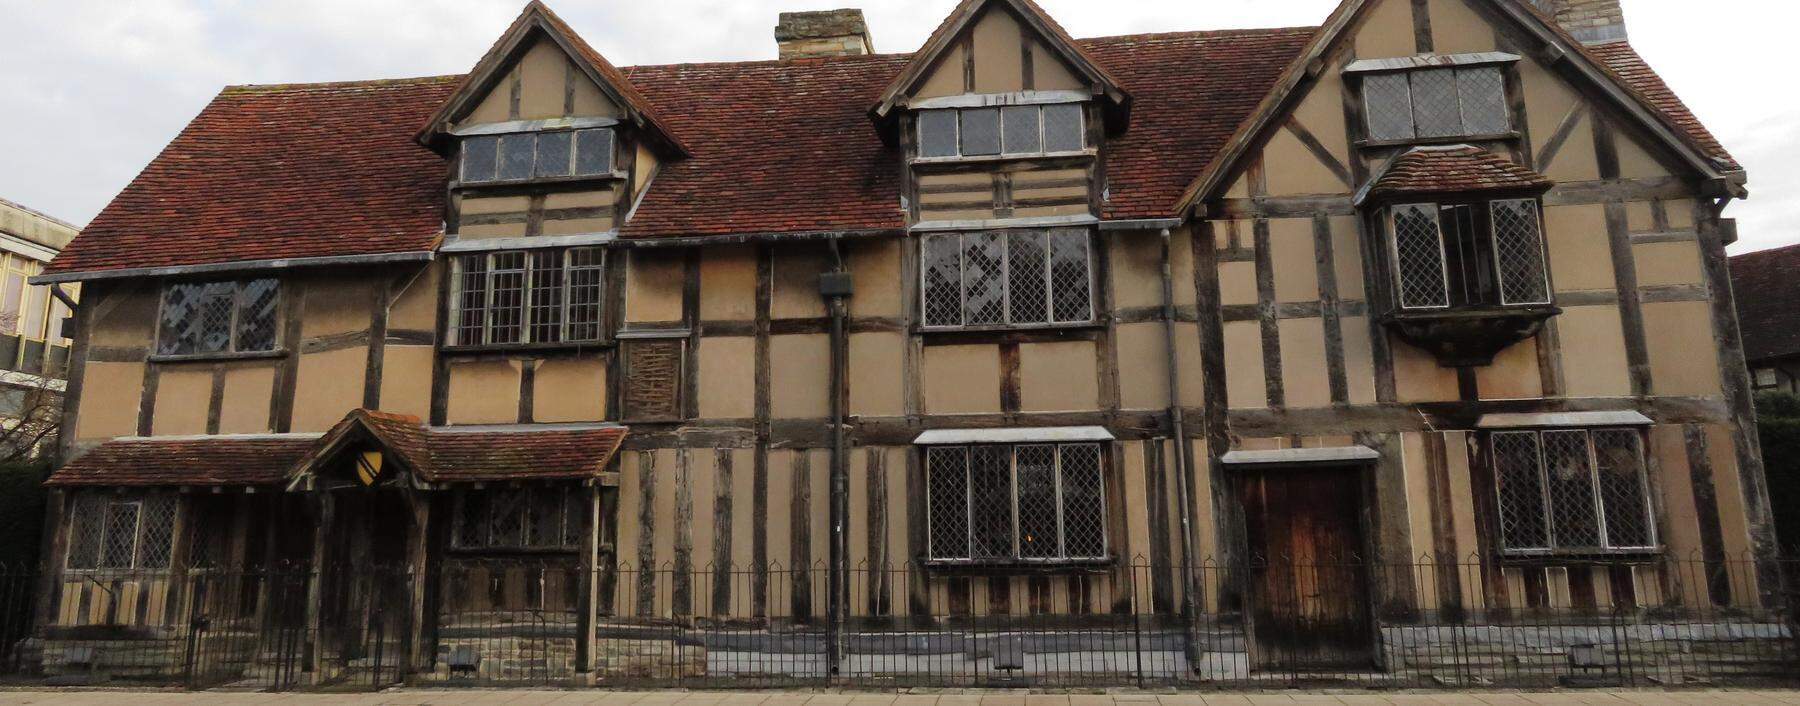 In diesem mittelenglischen Fachwerkhaus wurde William Shakespeare 1564 geboren.